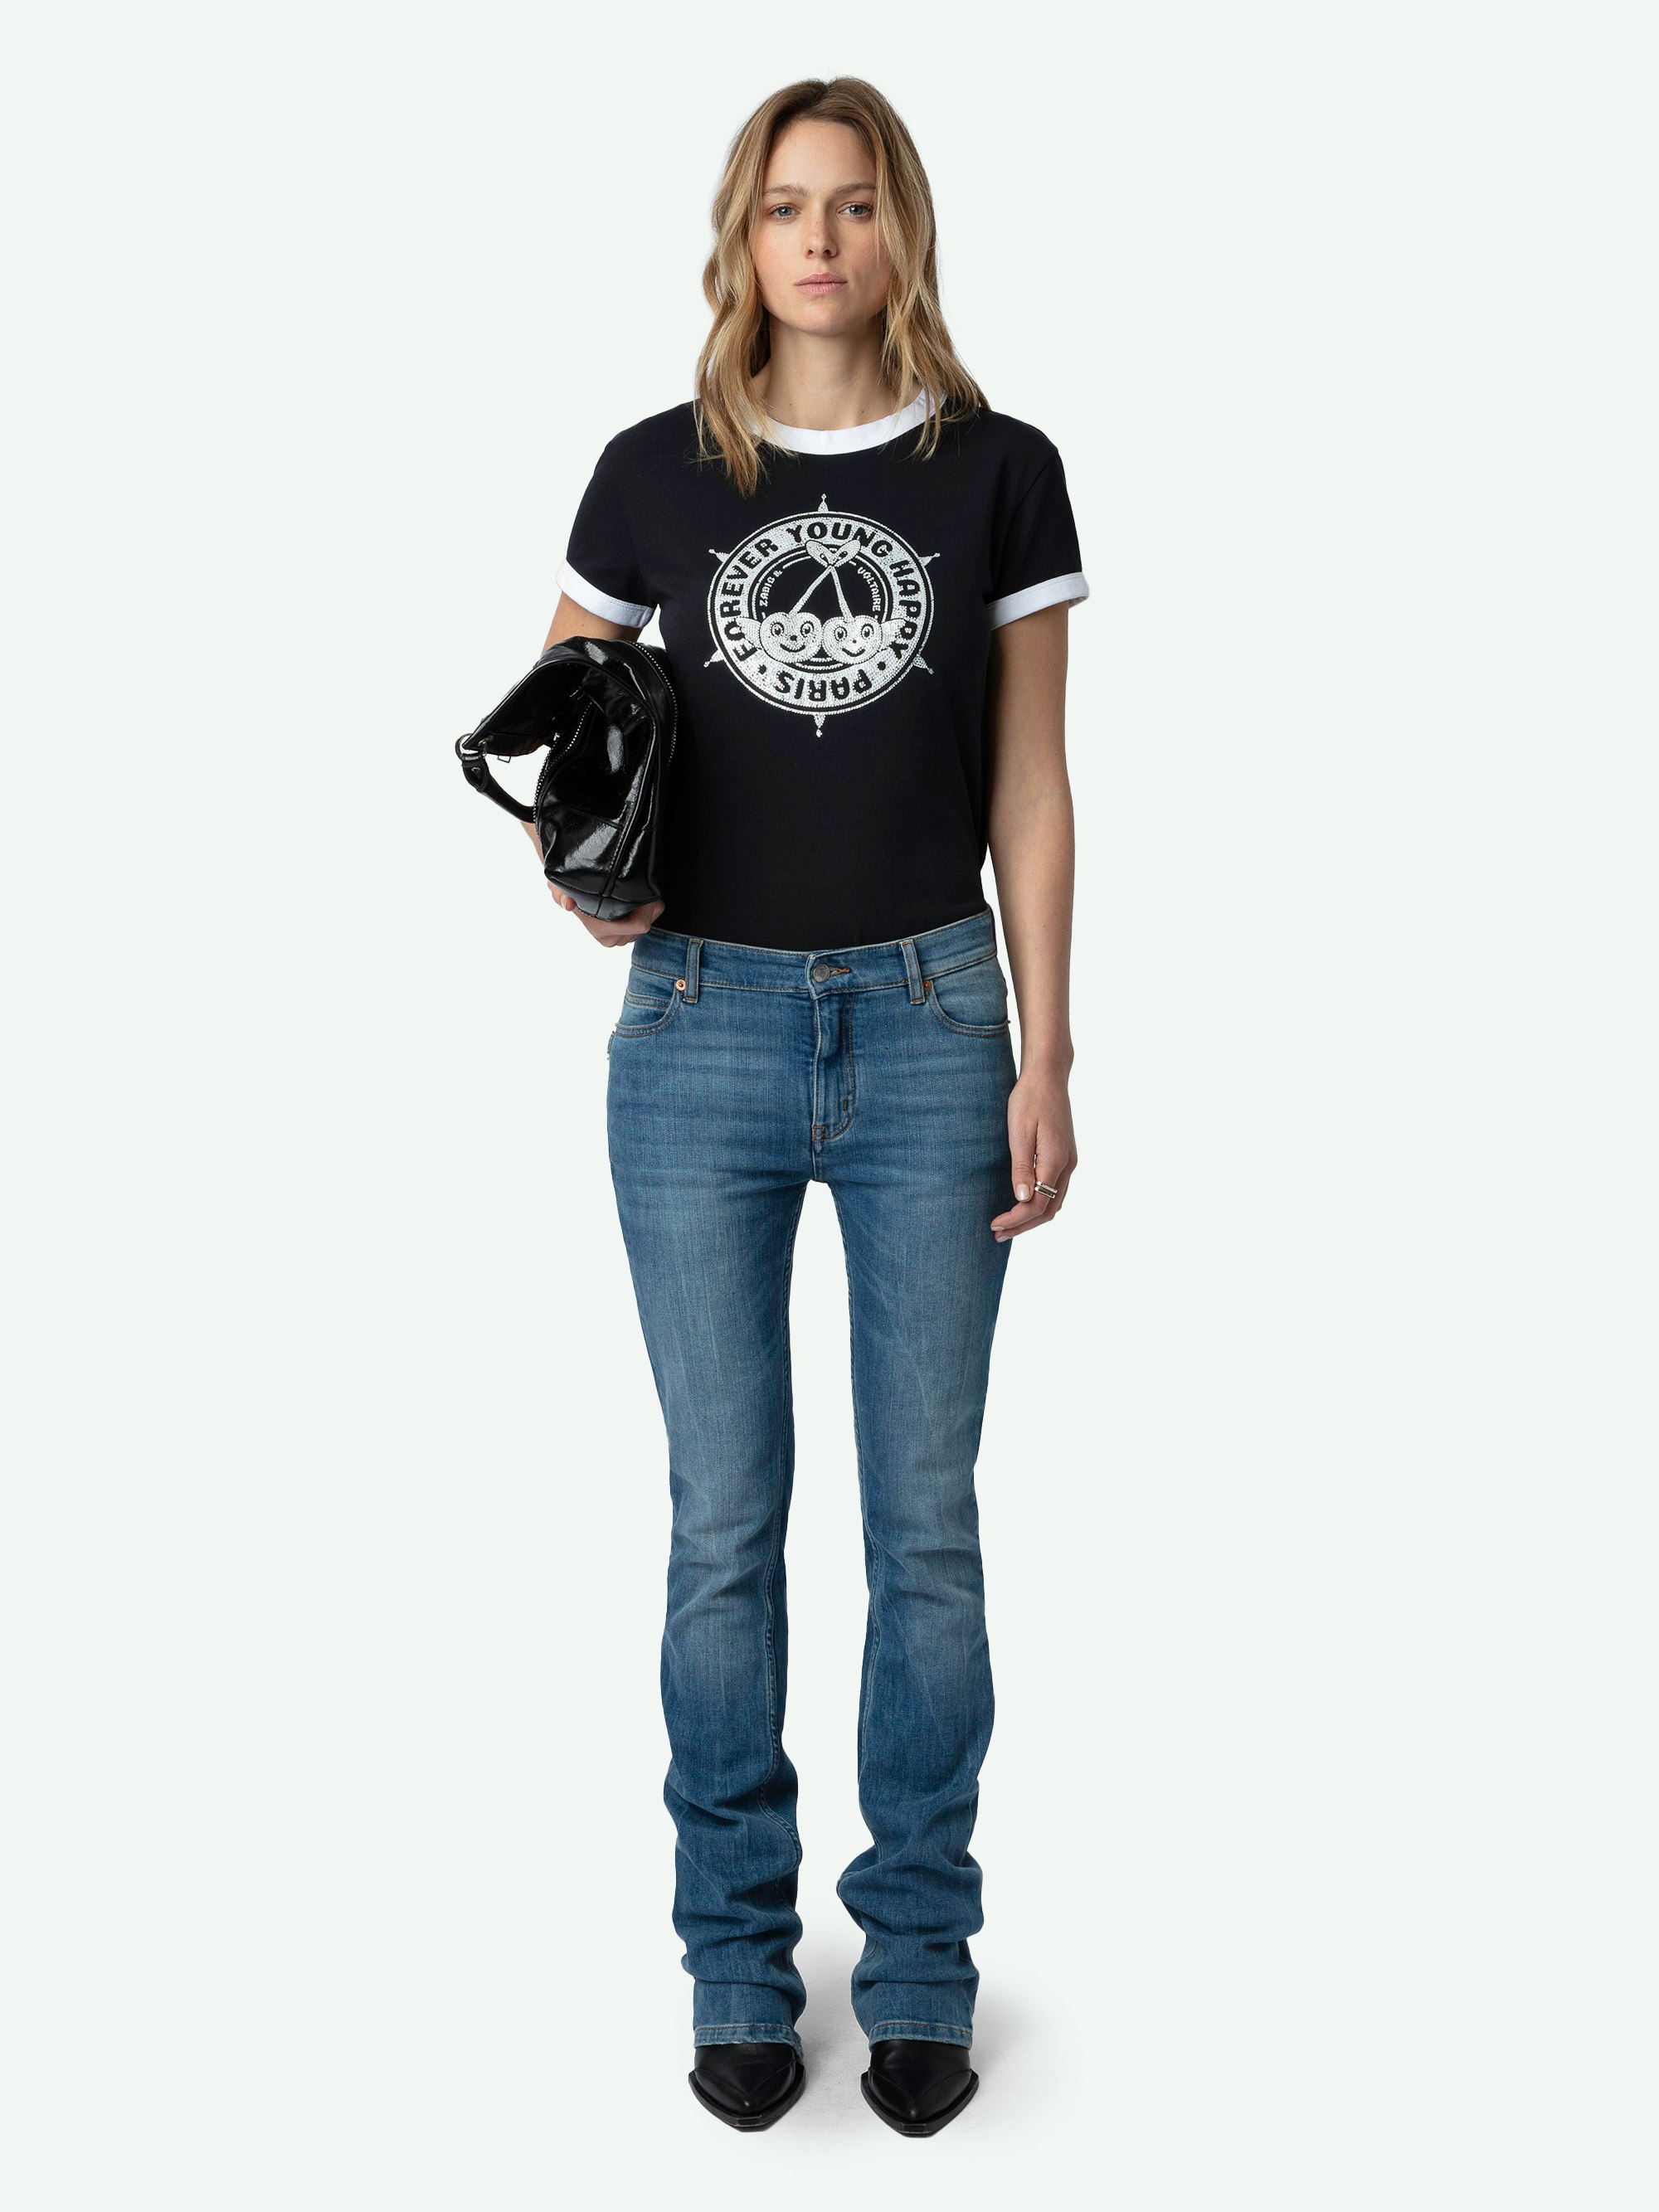 T-shirt Walk Blason Strass - T-shirt en coton biologique noir à manches courtes et imprimés blason et cerises ornés de strass à l'avant.